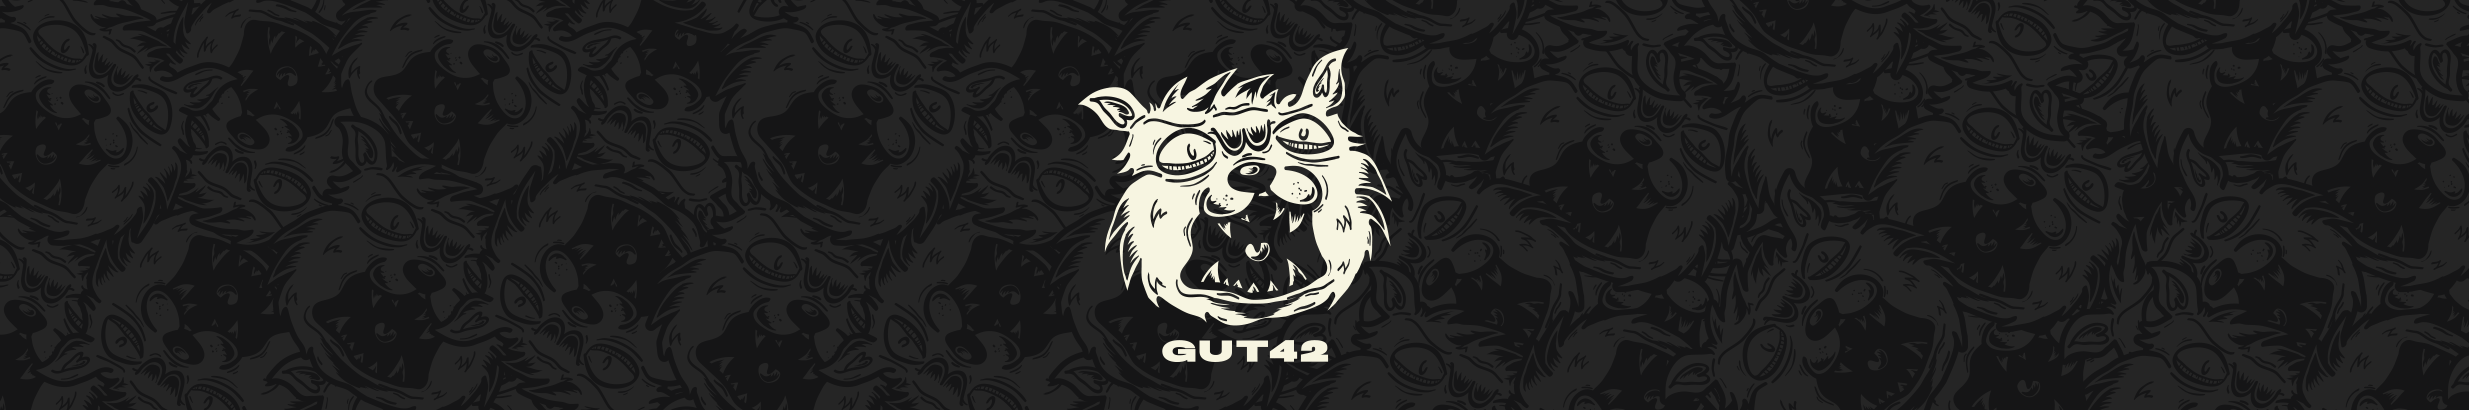 Vinicius Gut's profile banner